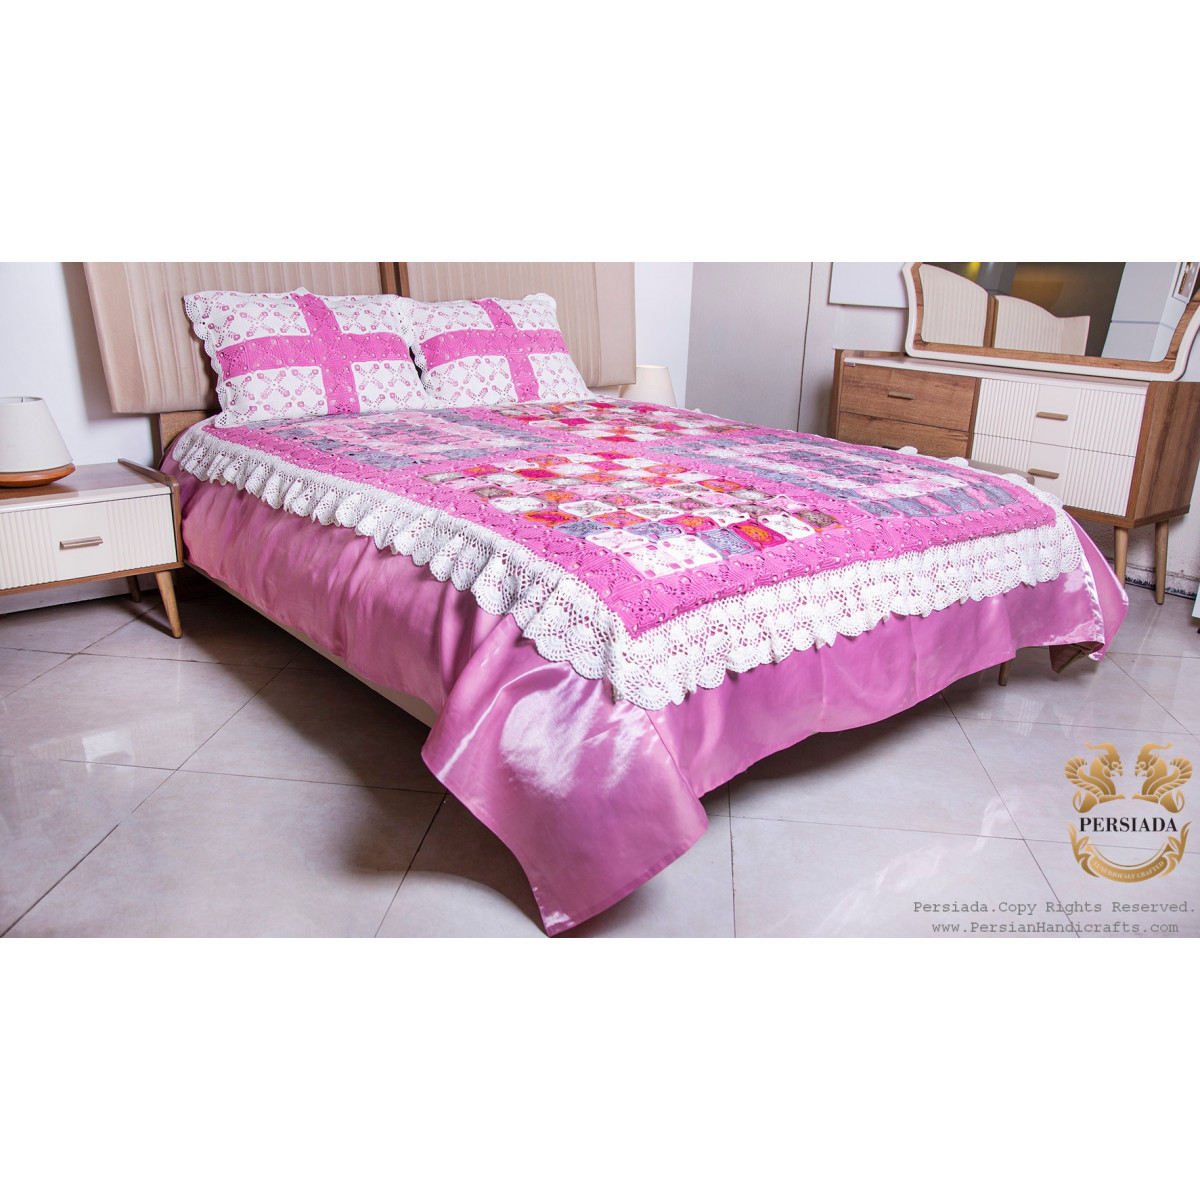 Tablecloth Bedspread Set | Macrame Knotting | HBS1002-Persiada Persian Handicrafts